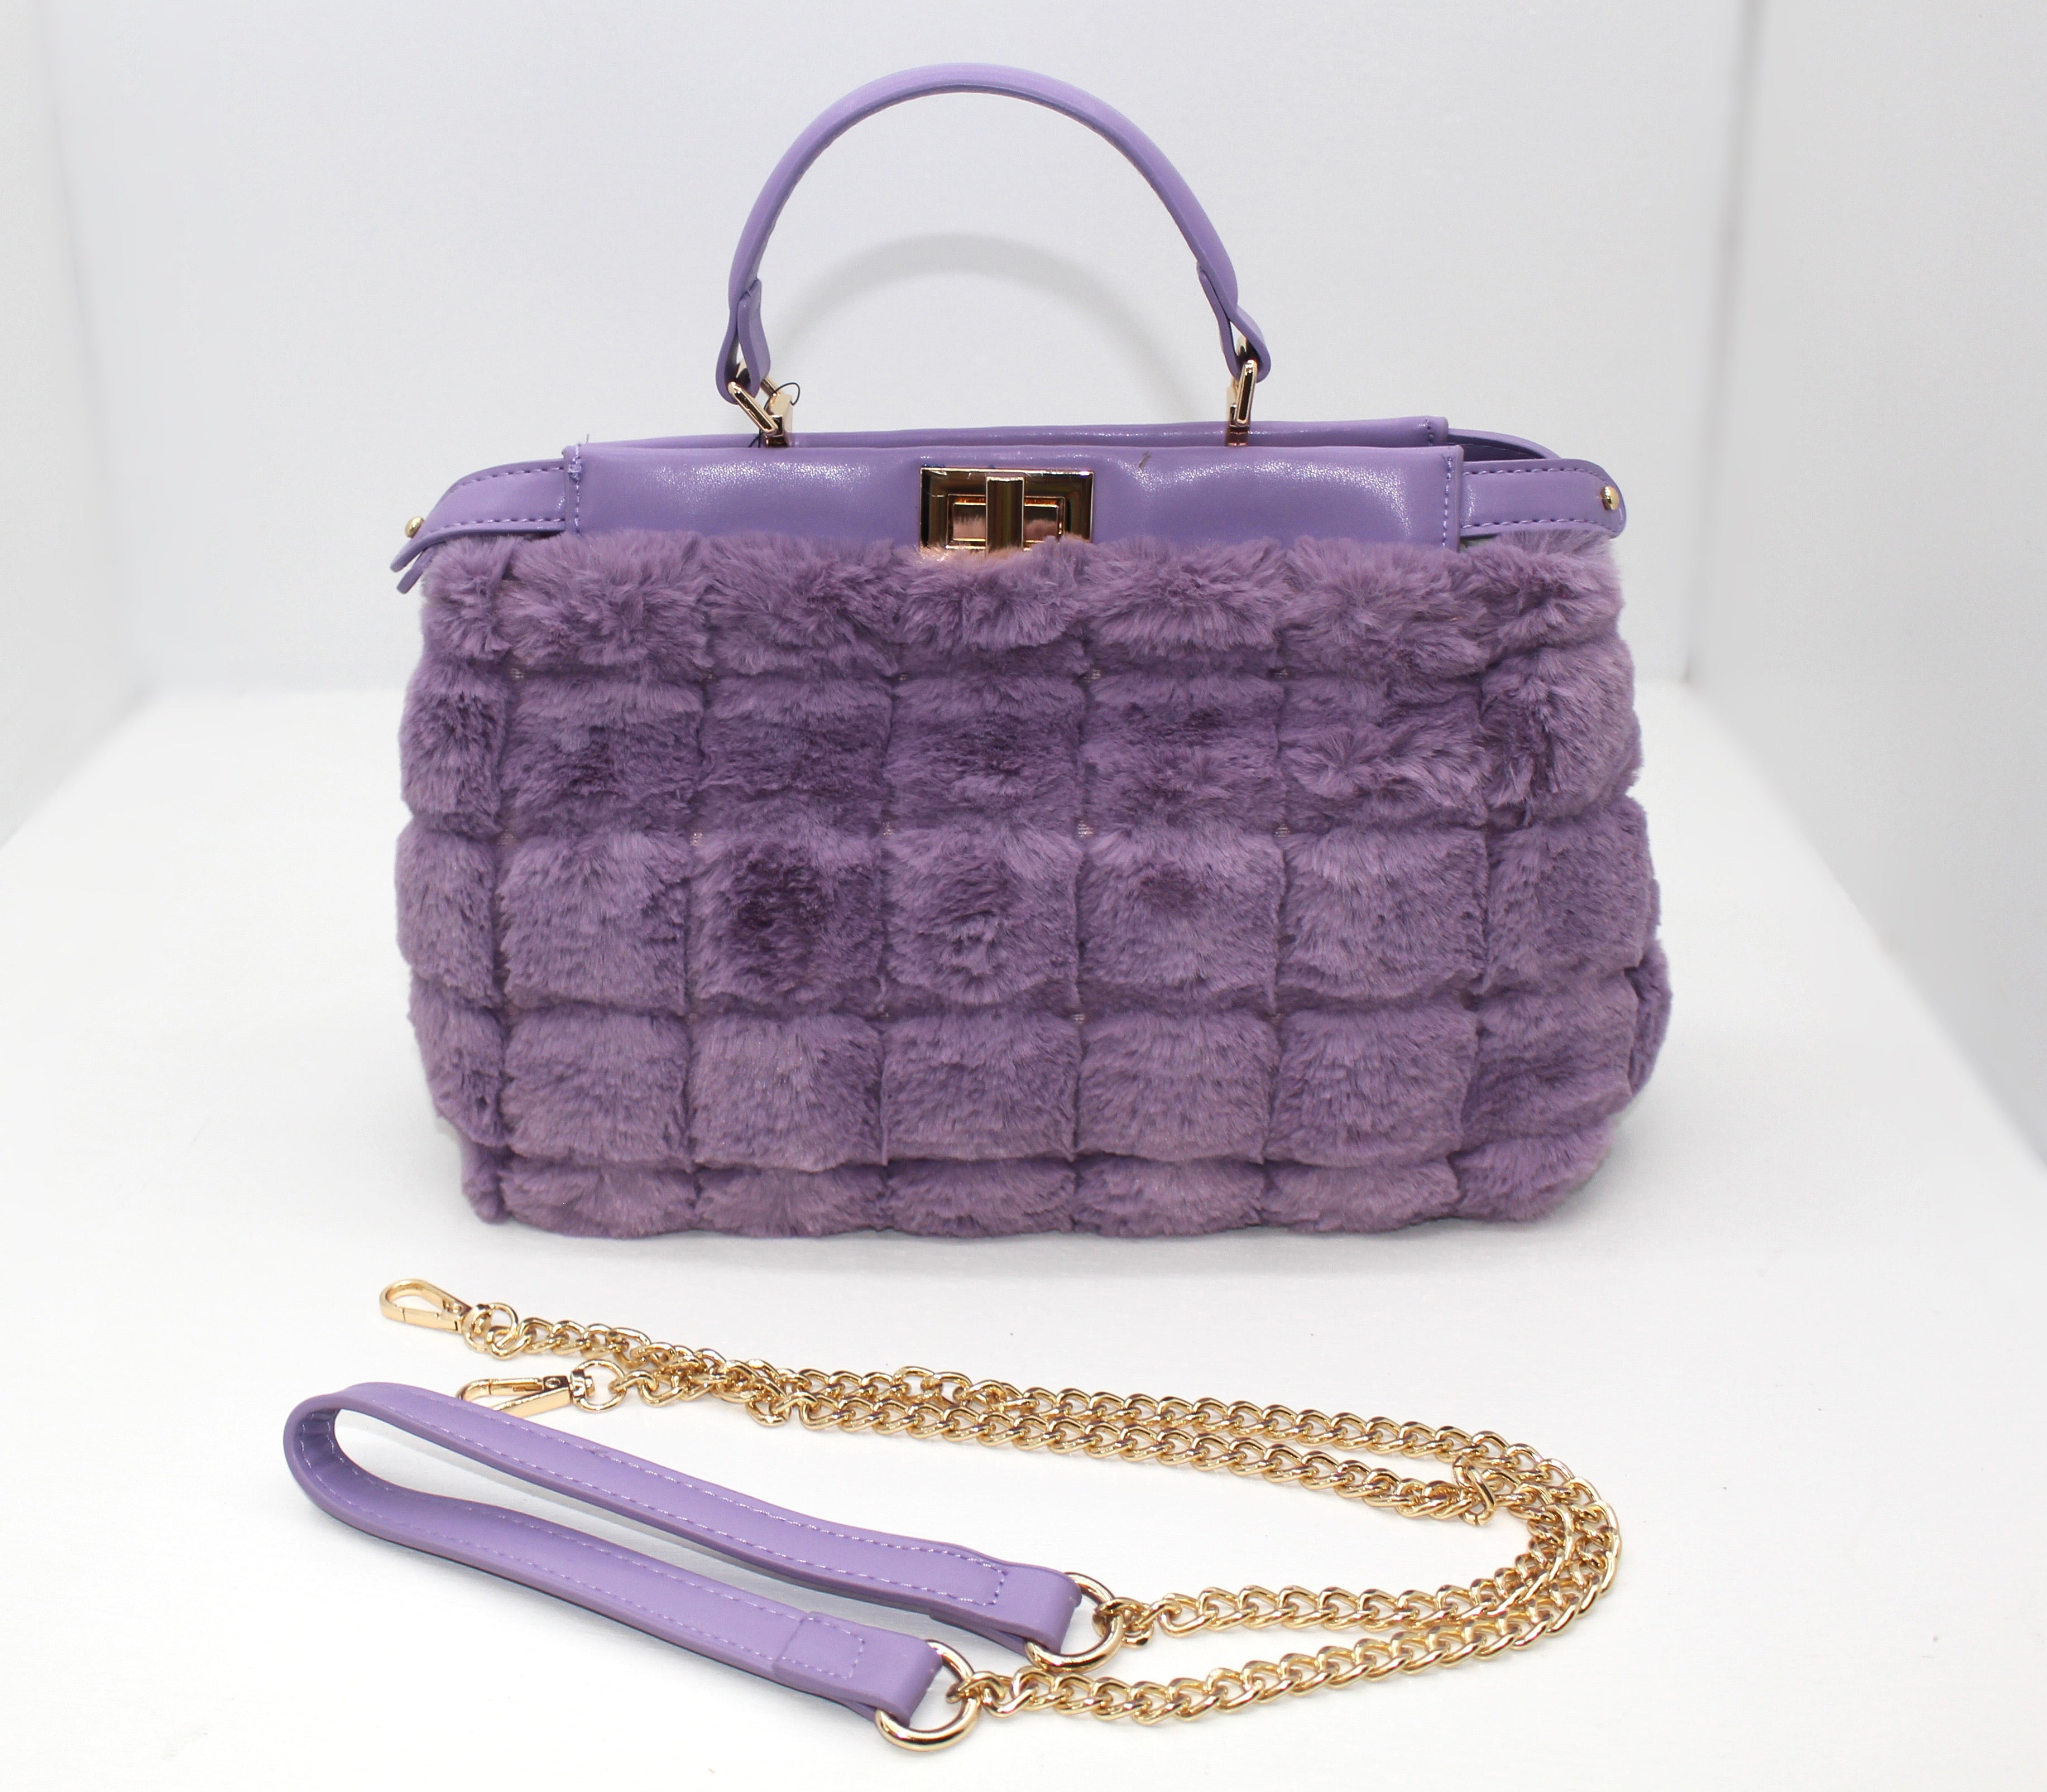 Lovely Lavender Bag